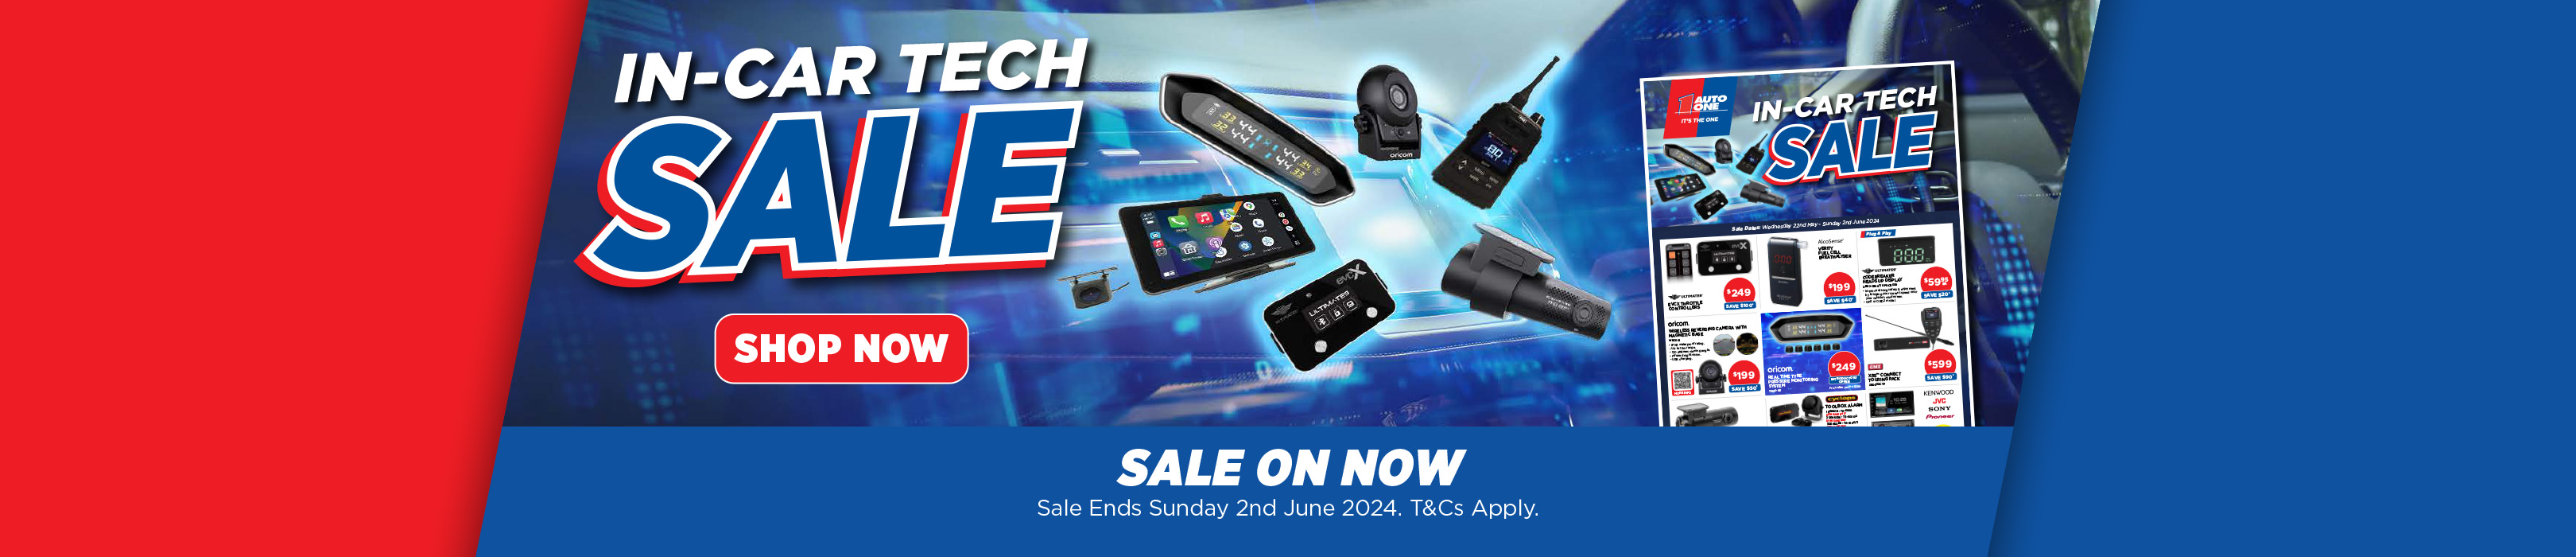 IN-Car Tech sale